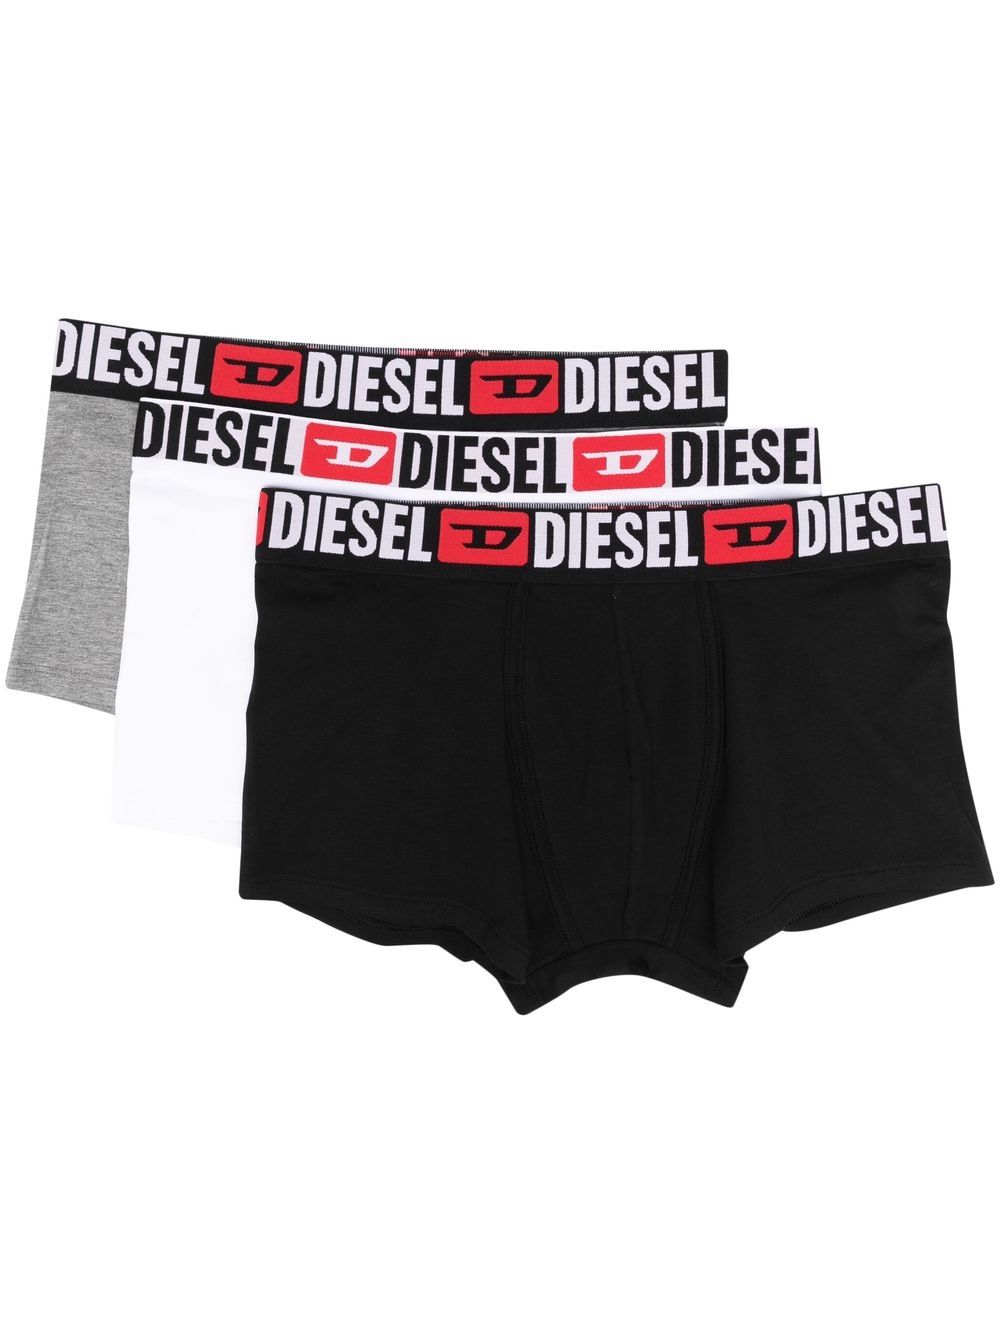 Image 1 of Diesel Umbx-Damien boxer briefs (pack of three)